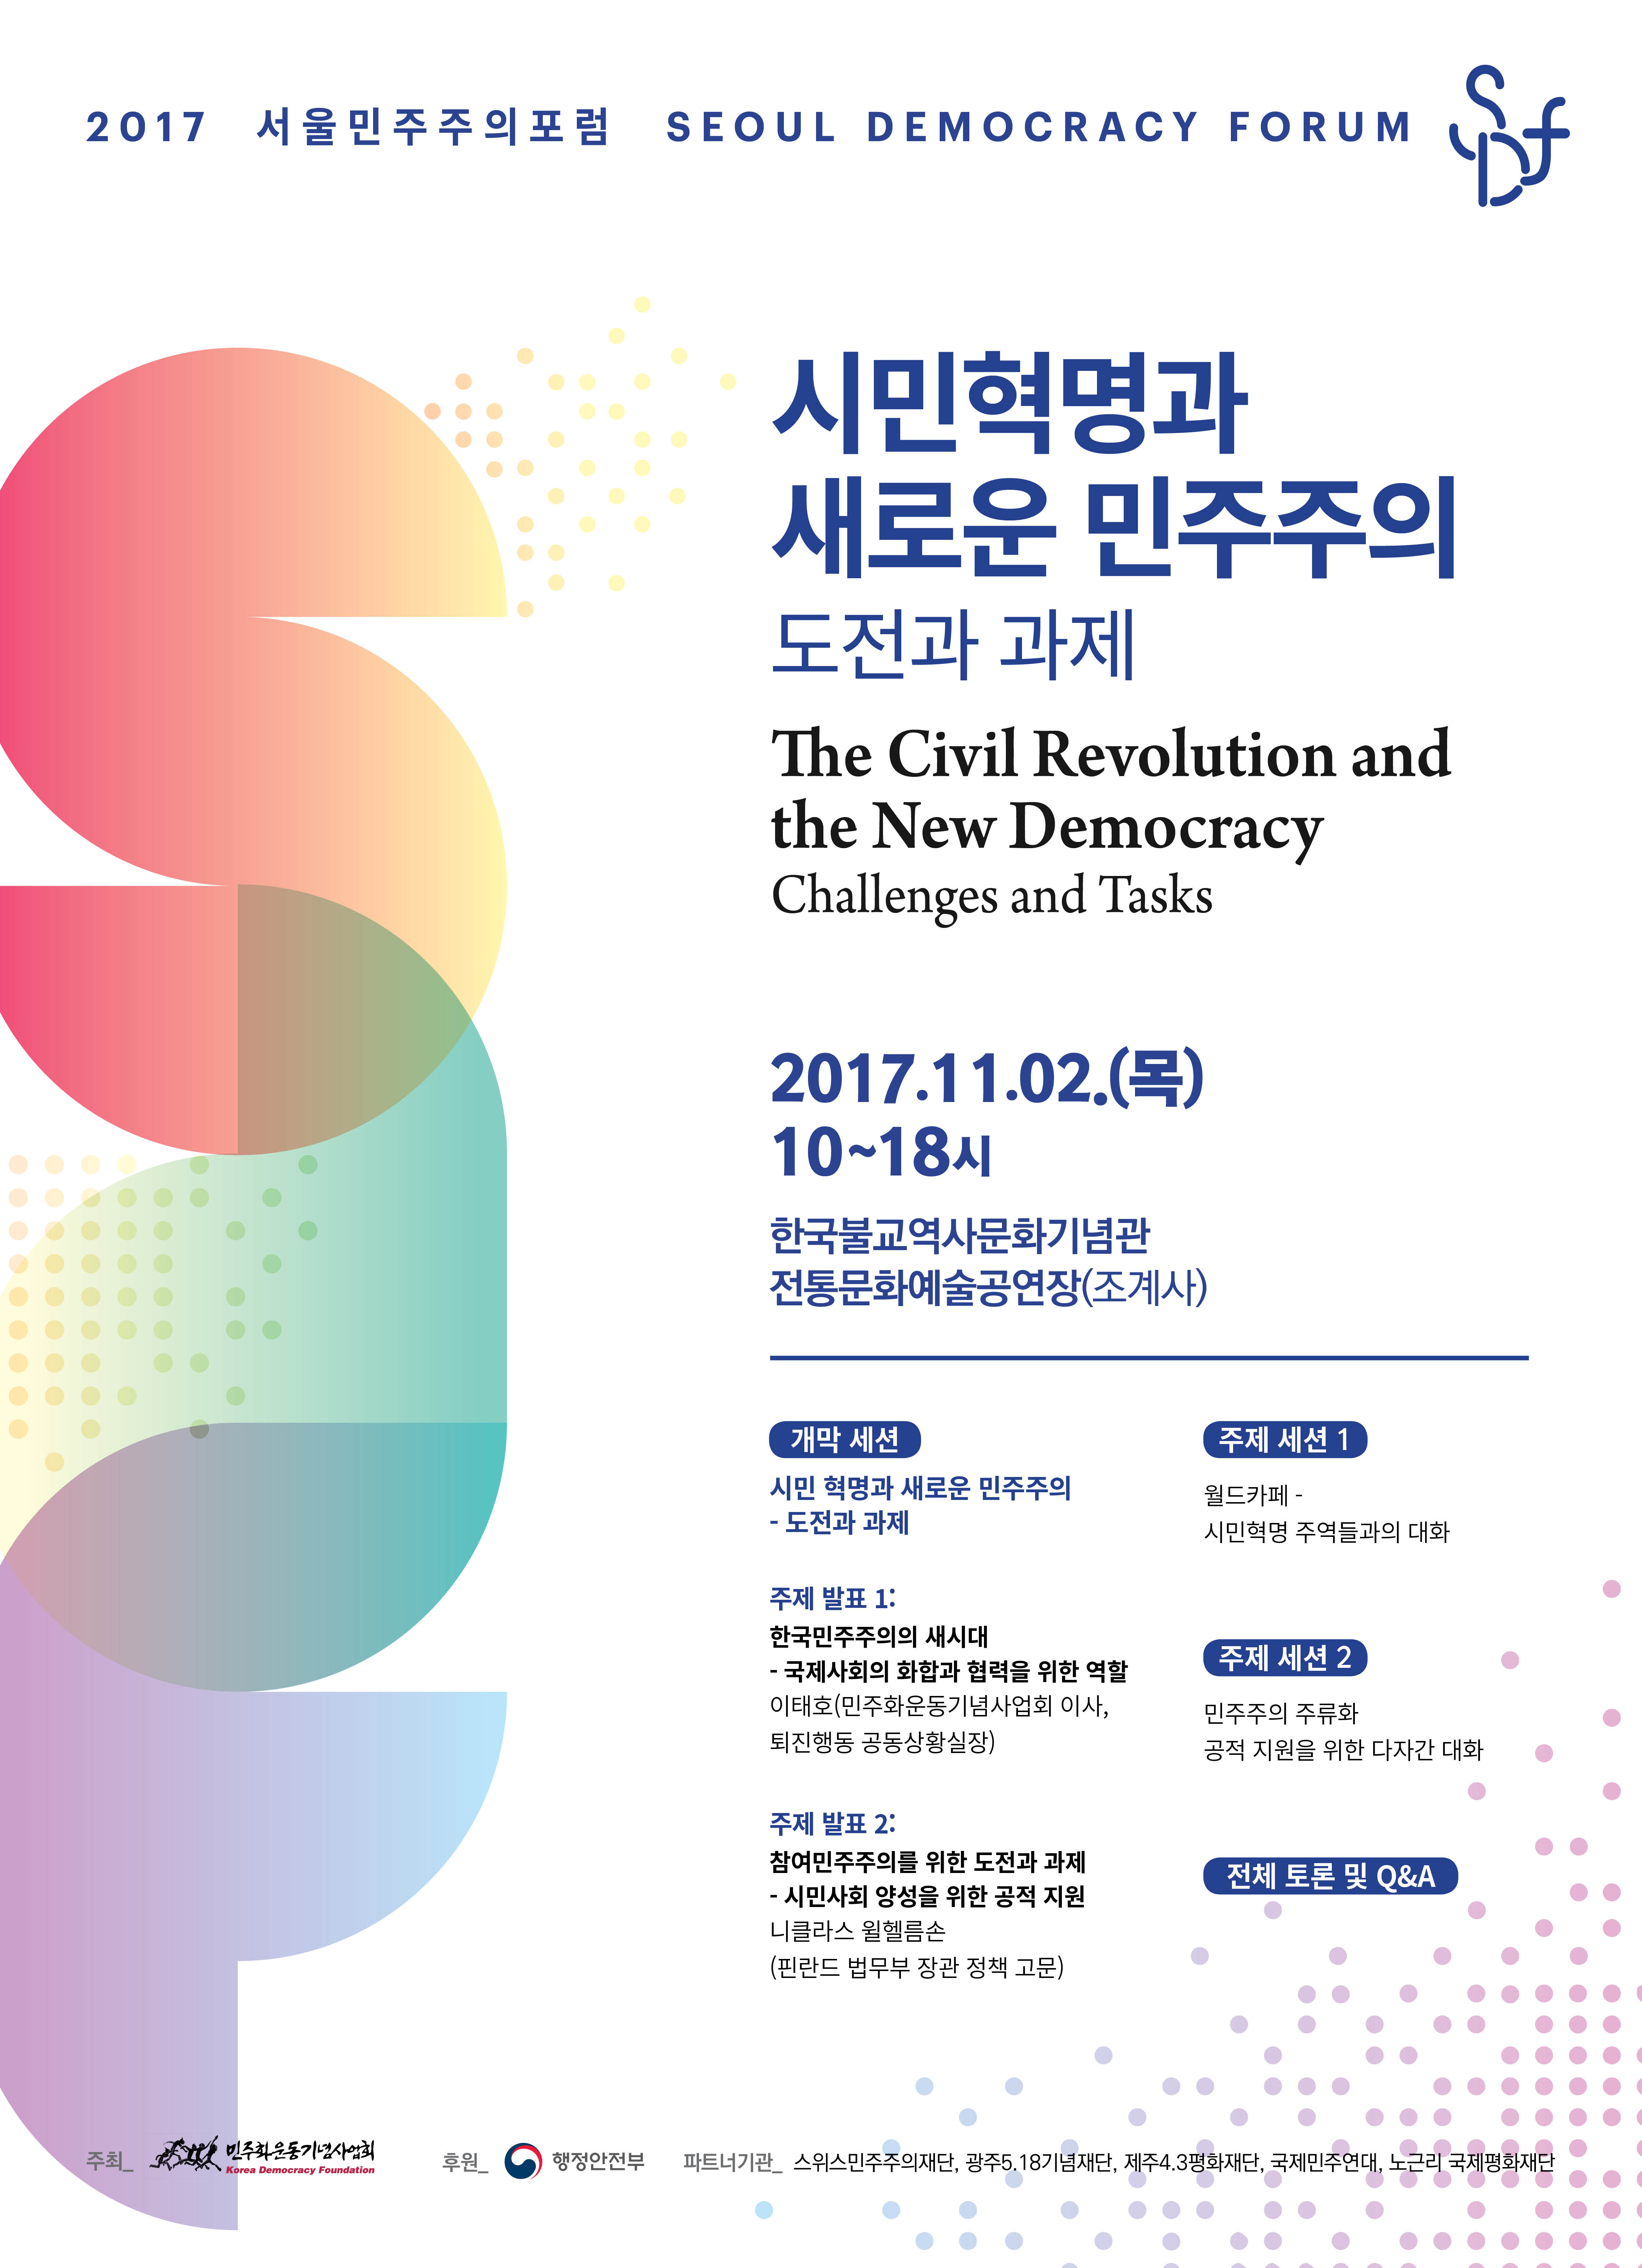 2017 서울민주주의포럼이 “시민혁명과 새로운 민주주의 – 도전과 과제” 주제로 열립니다. 